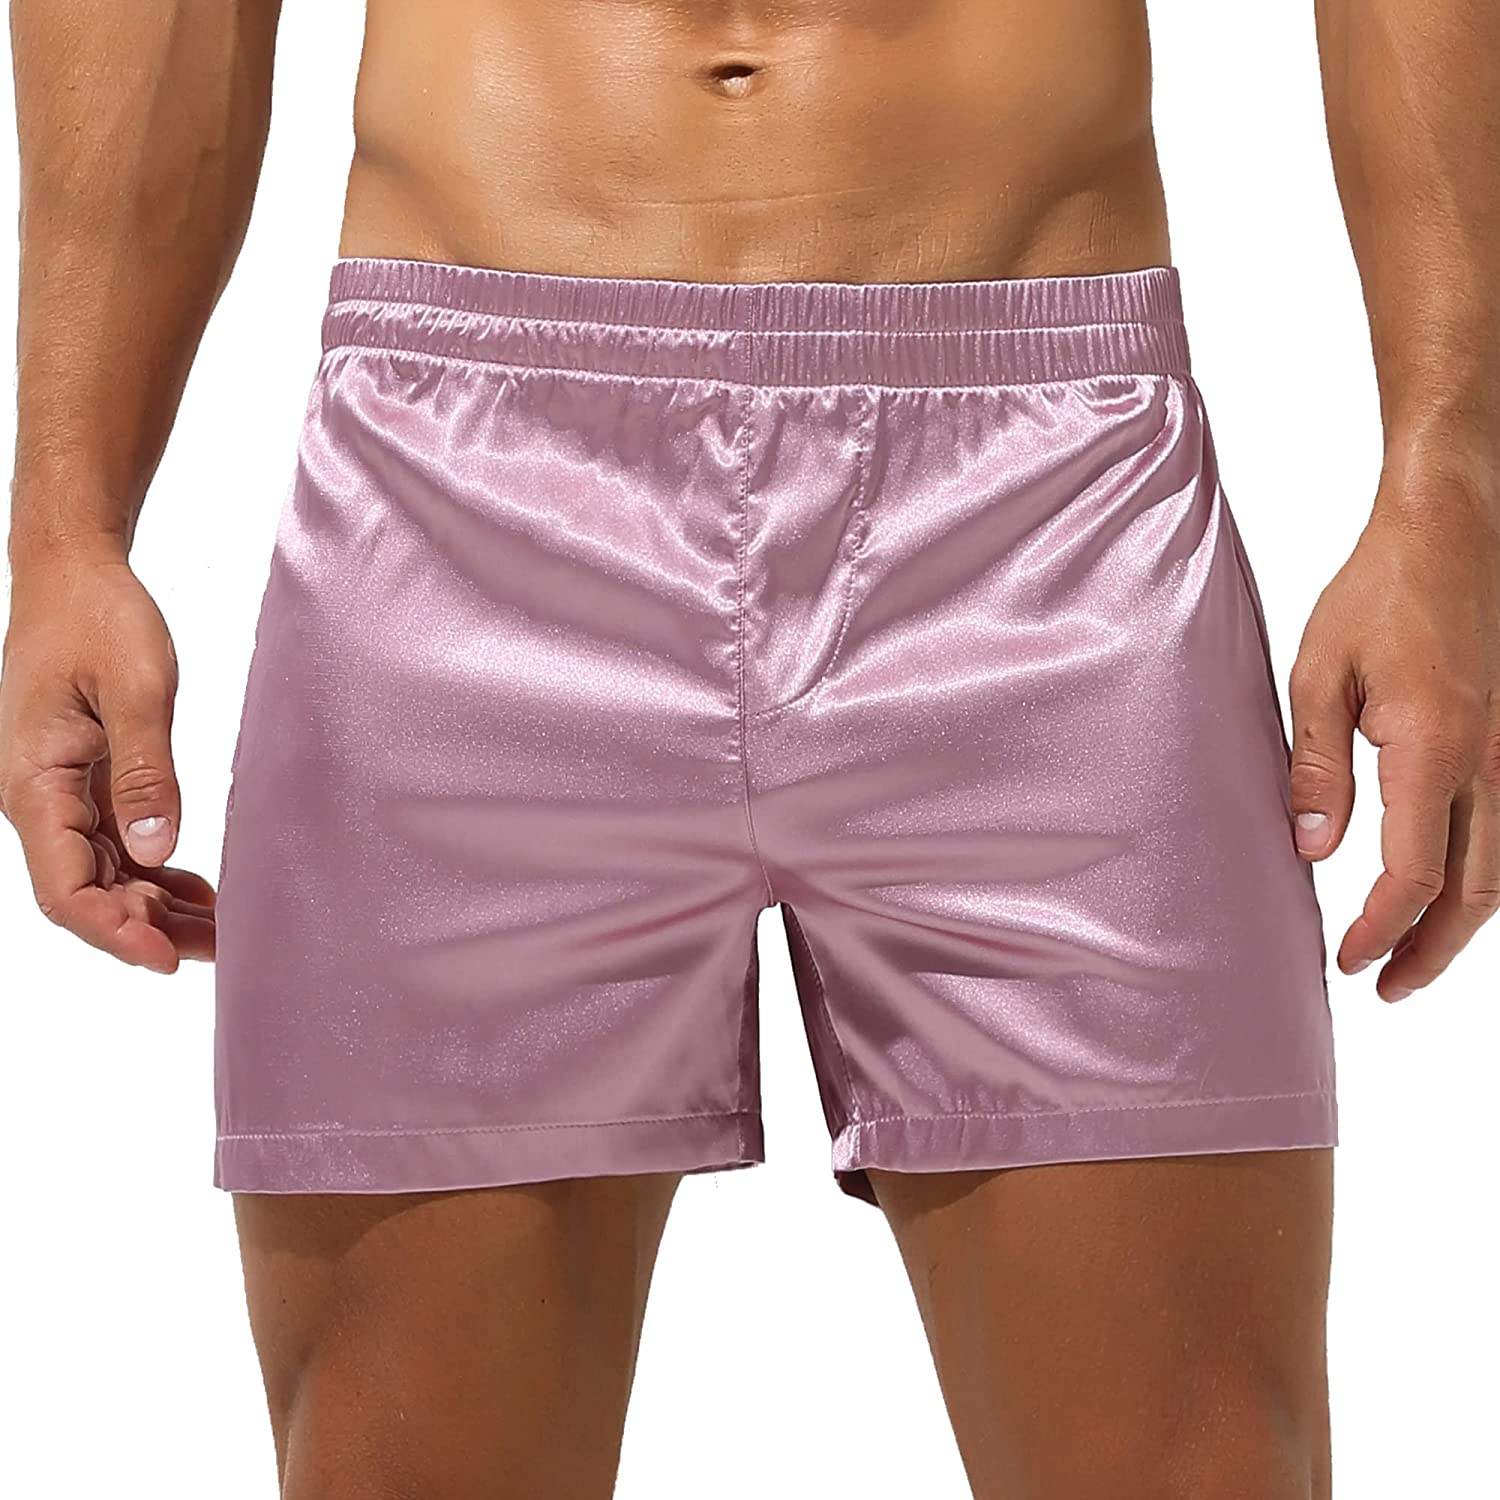 YOOBNG Men's Silk Stain Boxer Shorts Pajama Sleepwear Luxury Lounge Underwear Bottoms with Elastic Waist 